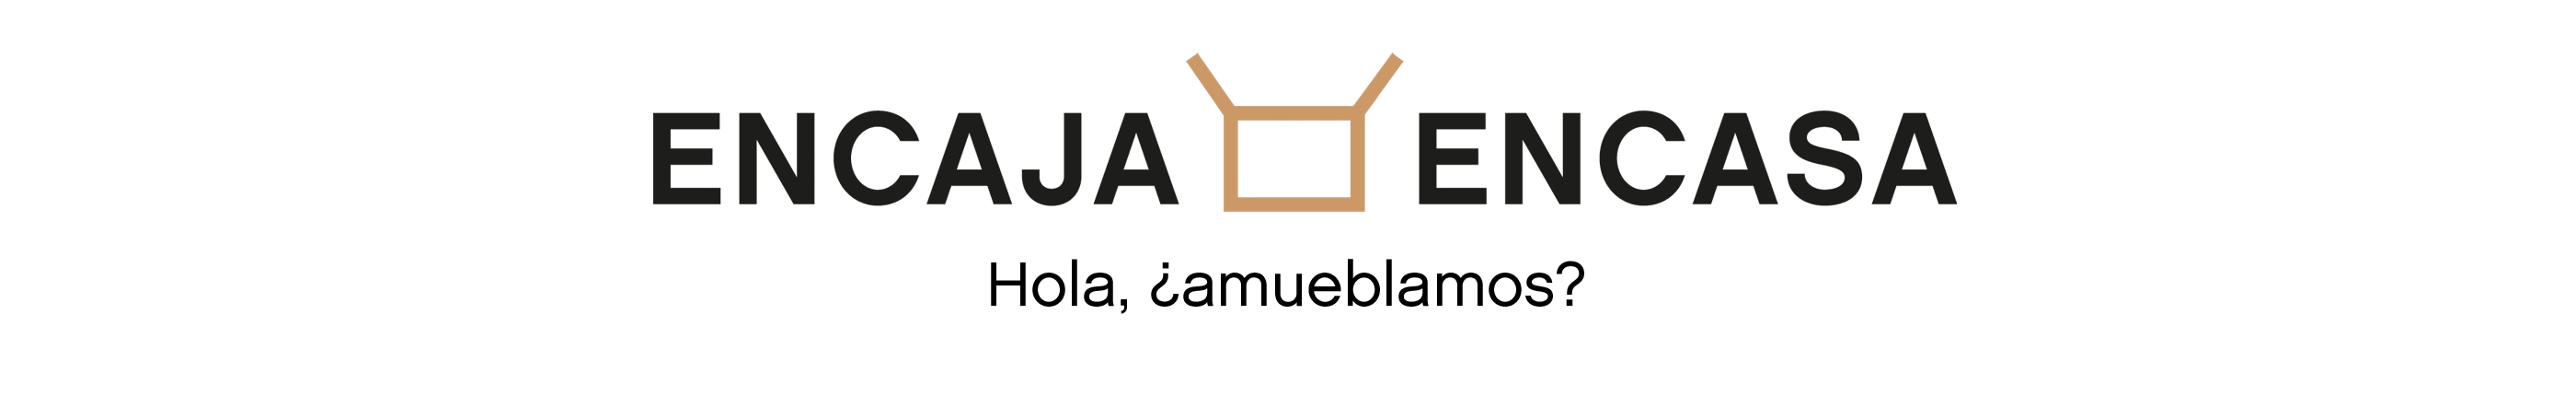 disseny logo encaja en casa, branding